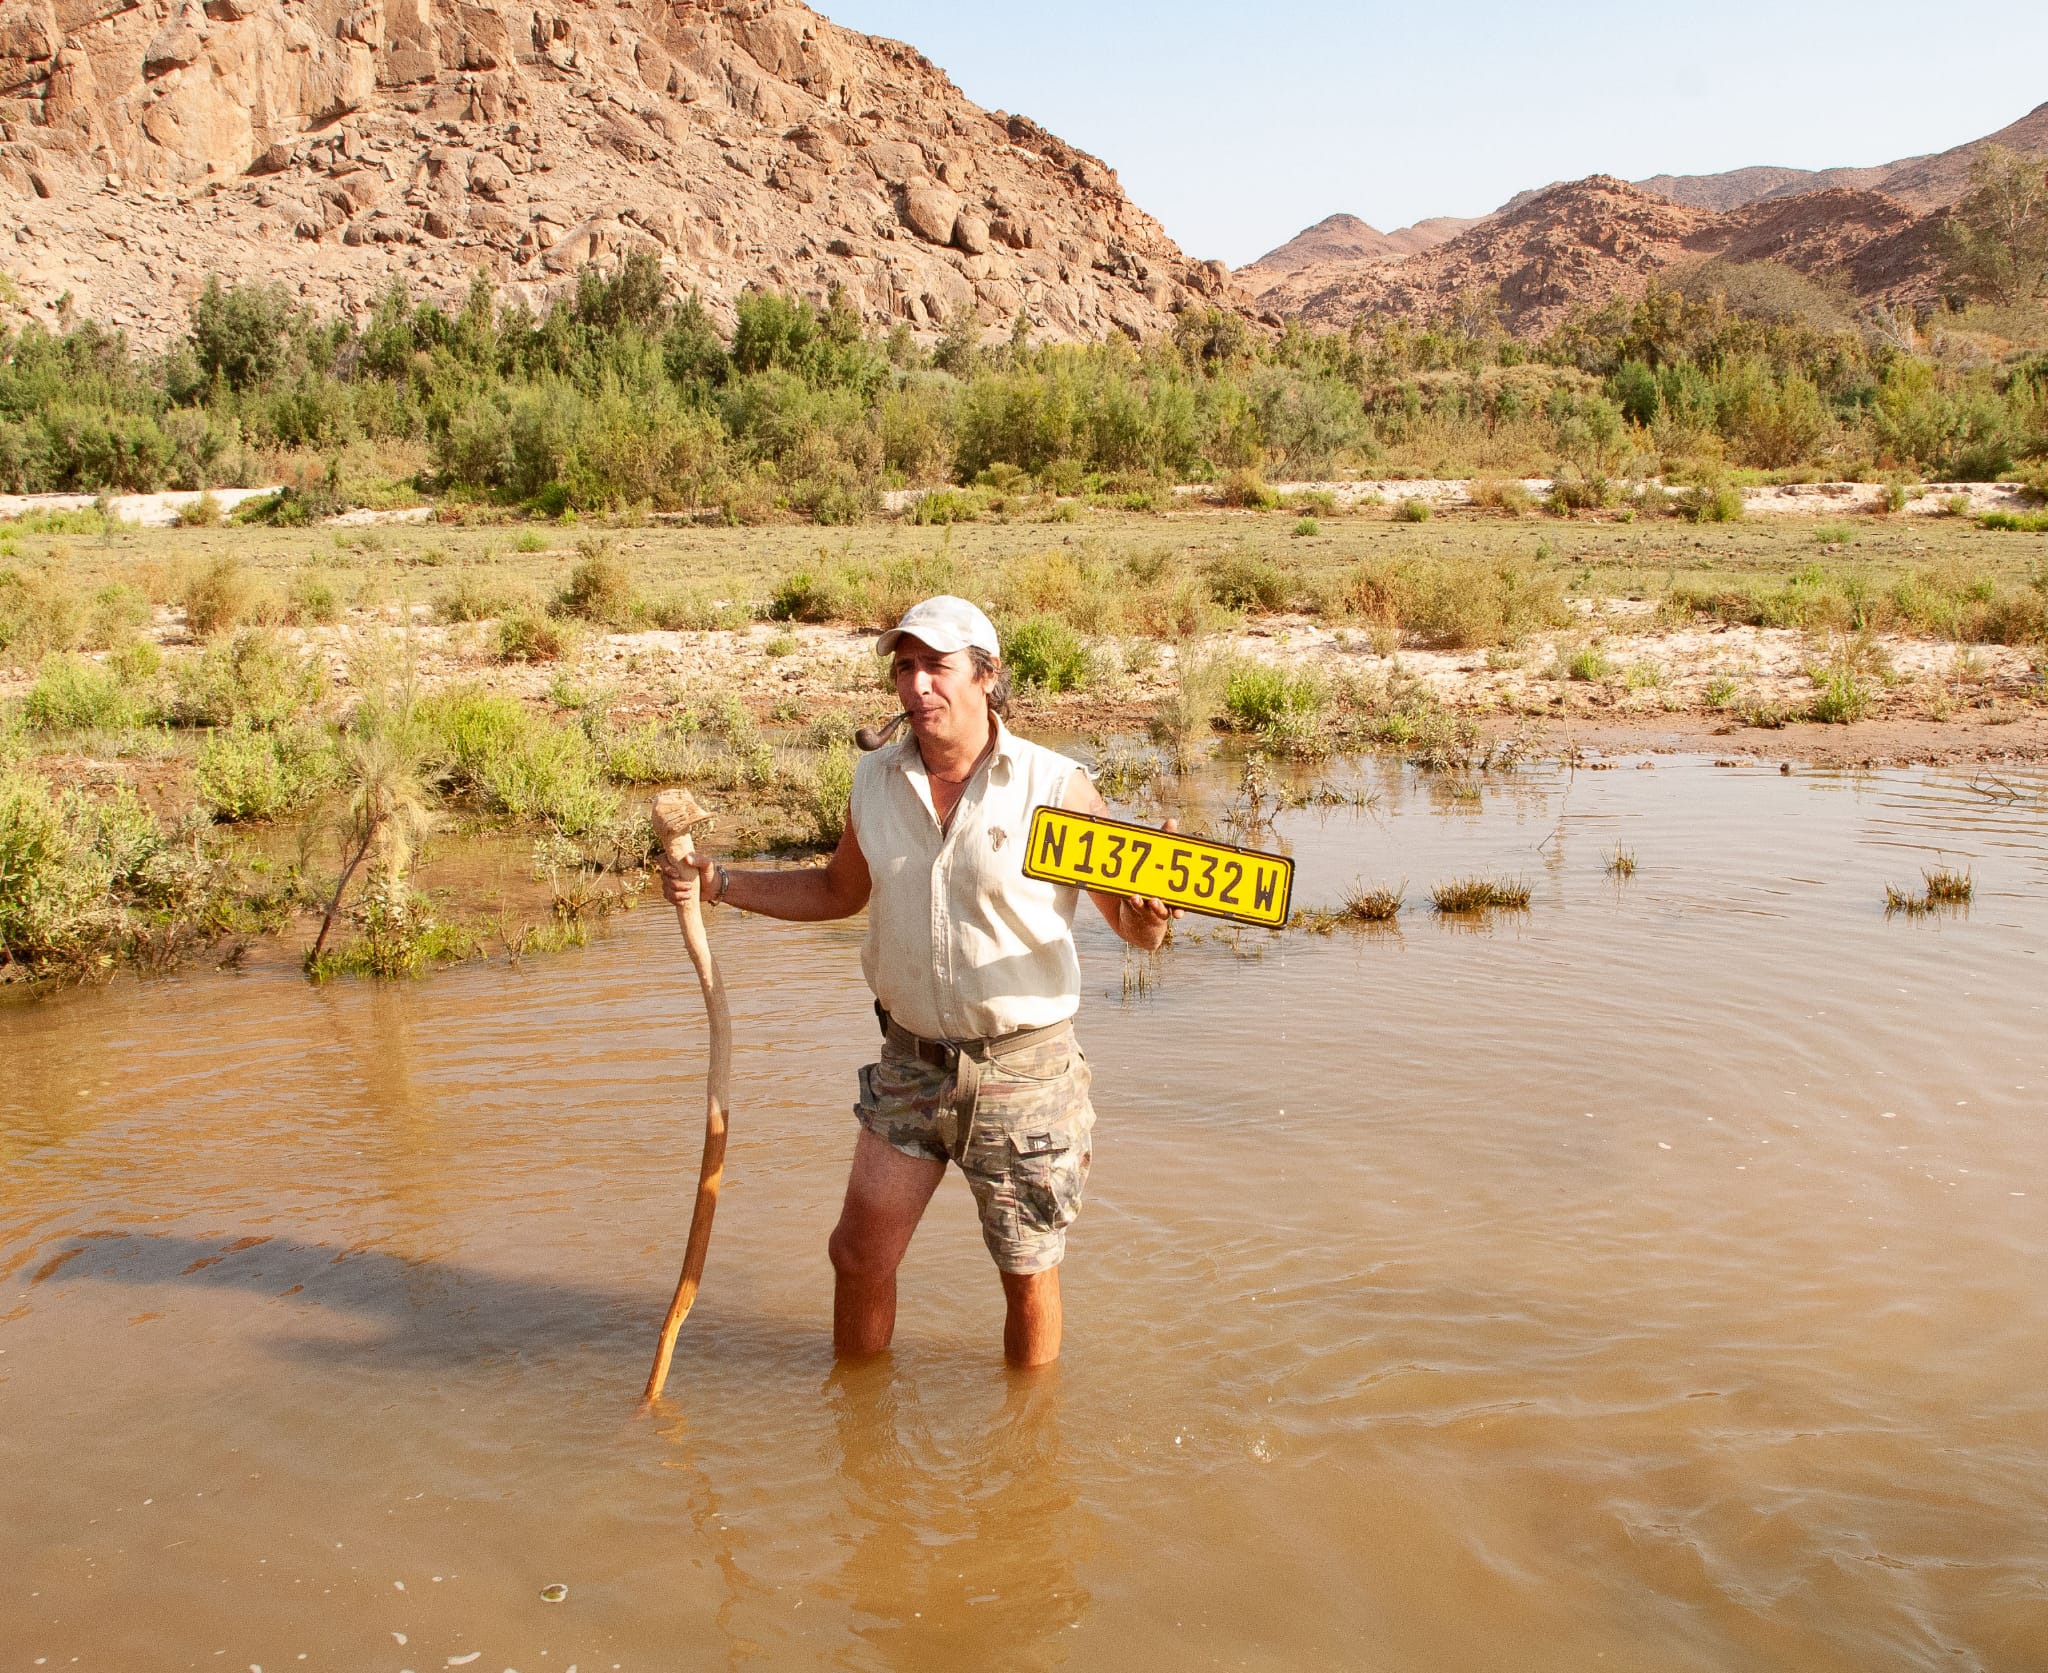 Ricerca e recupero della targa persa nel guado del fiume Hoarusib. Kaokoland, Namibia